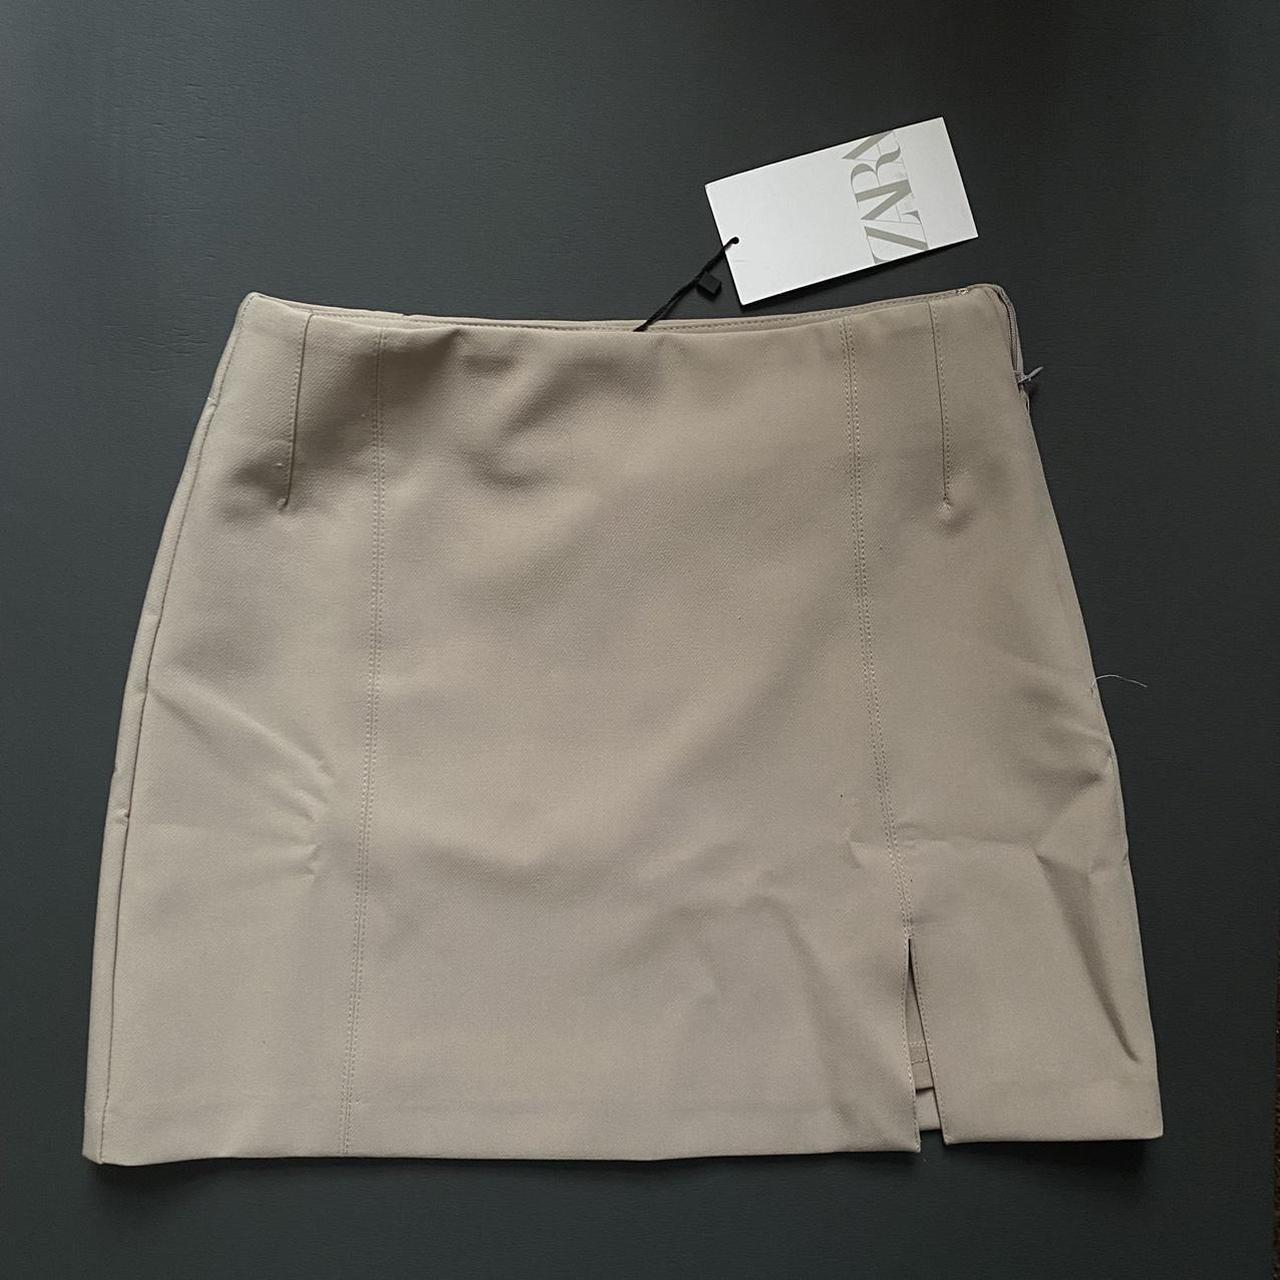 Zara mini skirt with slit - size XS - sand brown -... - Depop